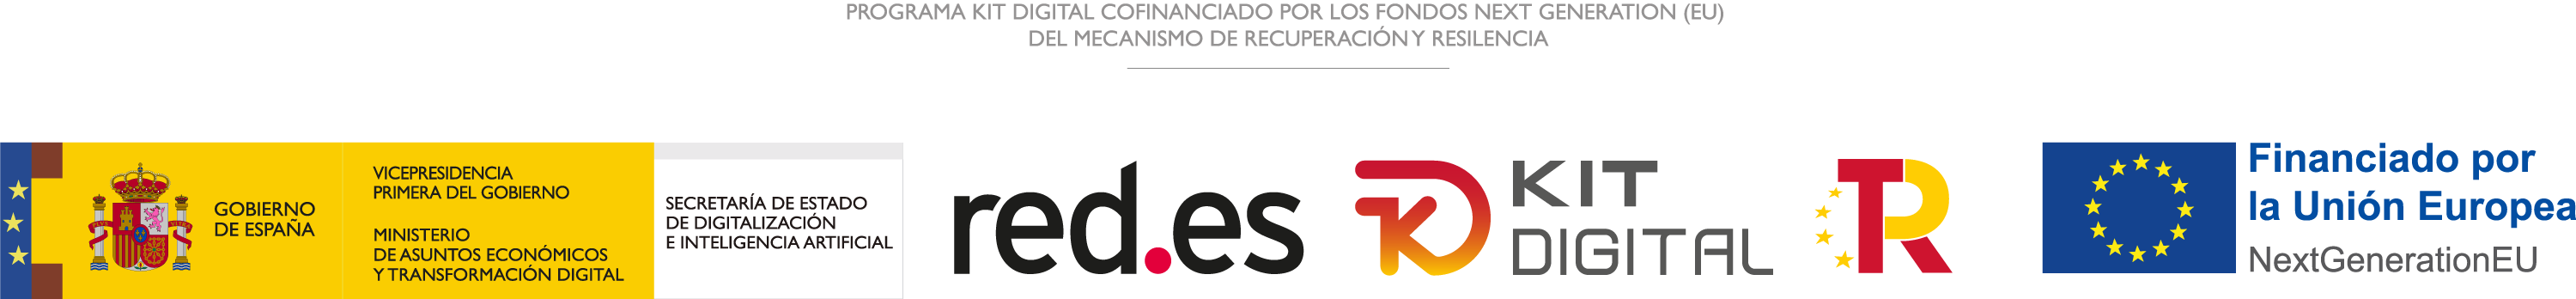 Programa Kit Digital cofinanciado por los fondos Next Generation (UE) del mecanismo de recuperación y resilencia